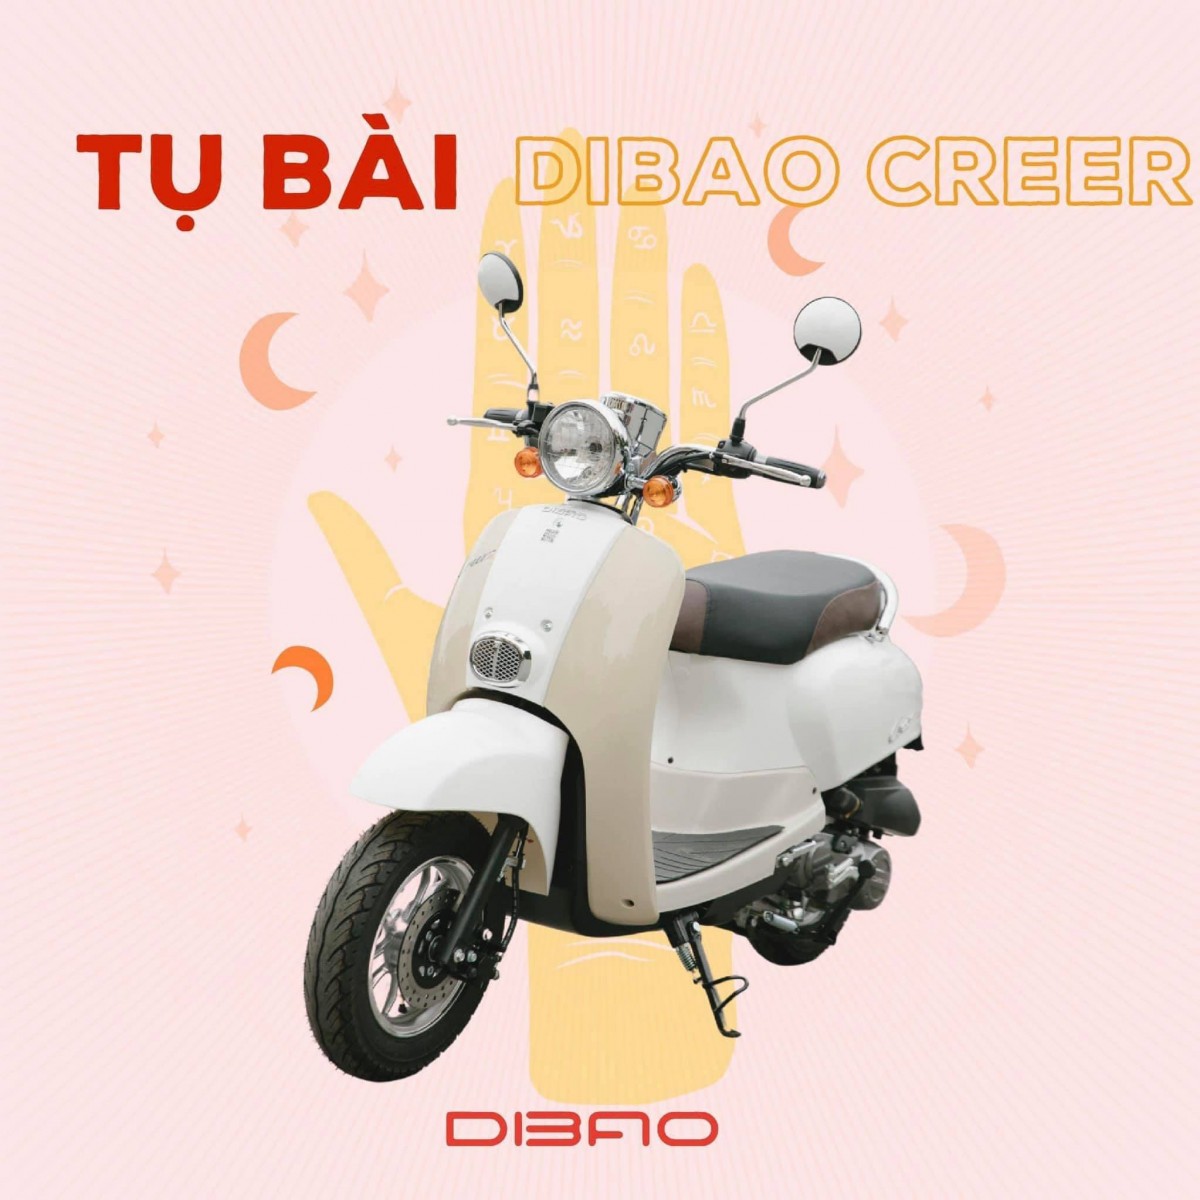 Cảm nhận về xe ga 50cc Dibao Creer: Dáng đẹp, máy mạnh thích hợp cho nữ giới